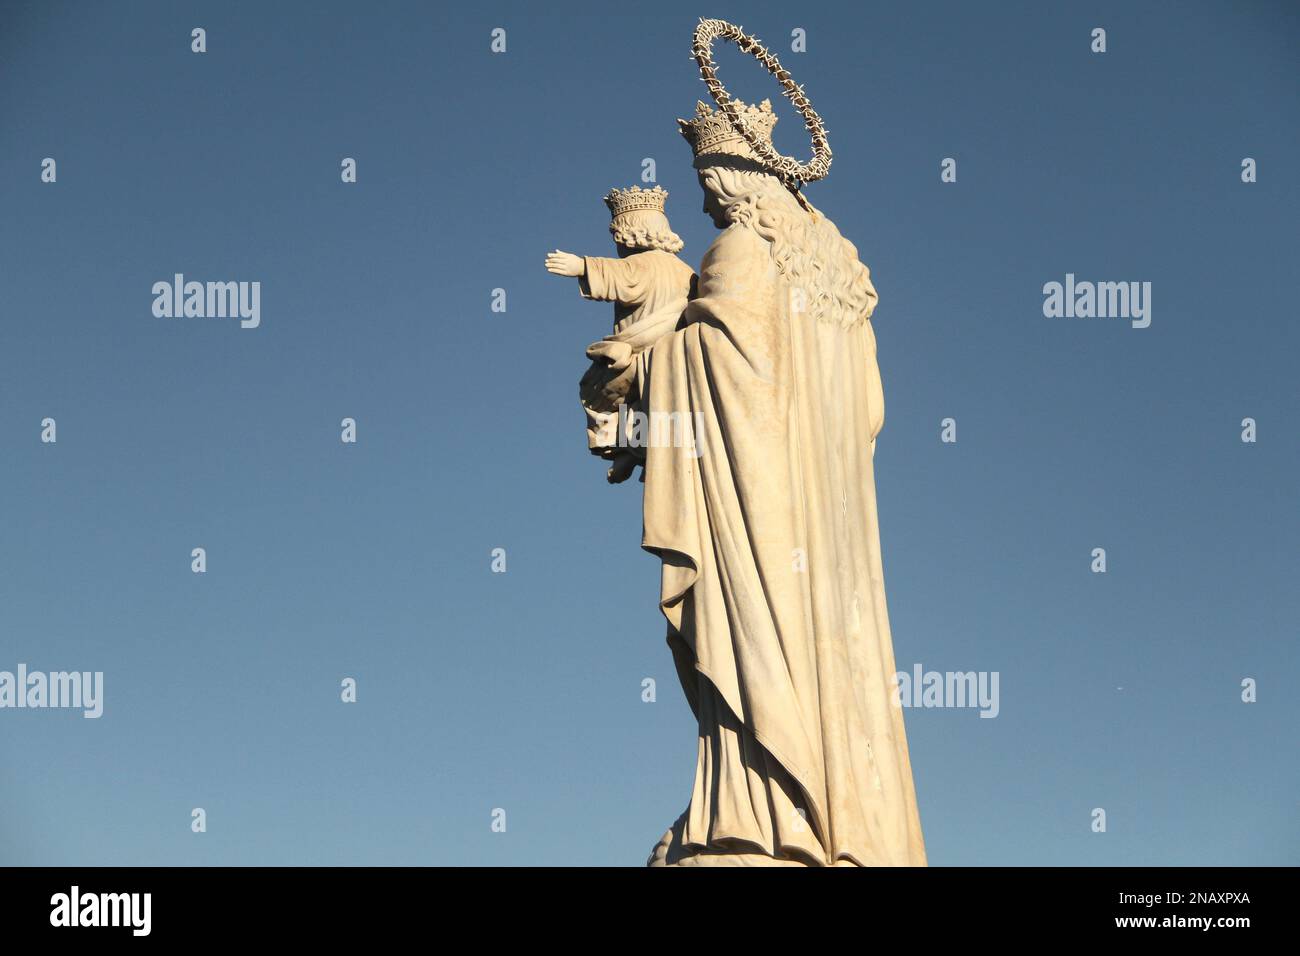 Gaeta, Italia. Statua di Santa Maria Ausiliatrice, opera in marmo di Carrara dello scultore Nicola Arrighini, nel Parco Monte Orlando. Foto Stock